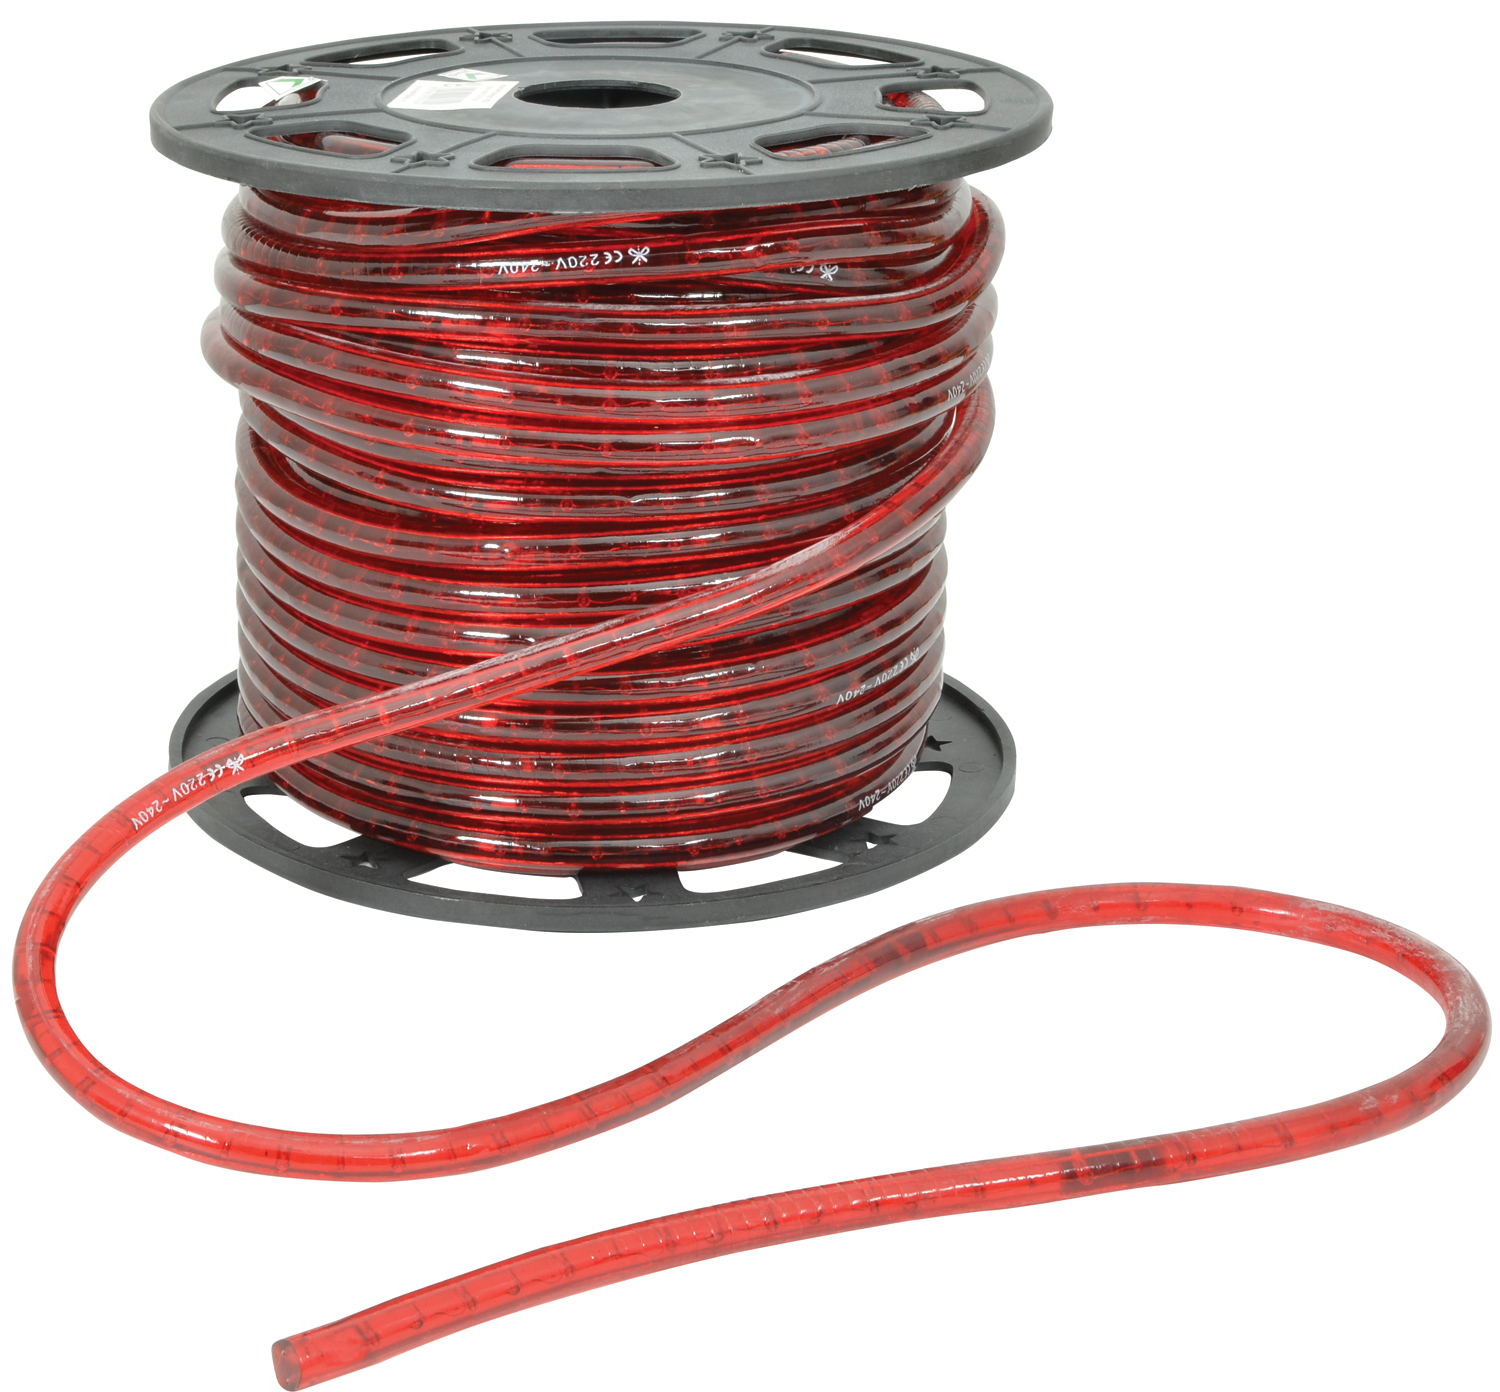 230V Rope Light - 45m Rope light, 230V, 45m reel, red - price per m